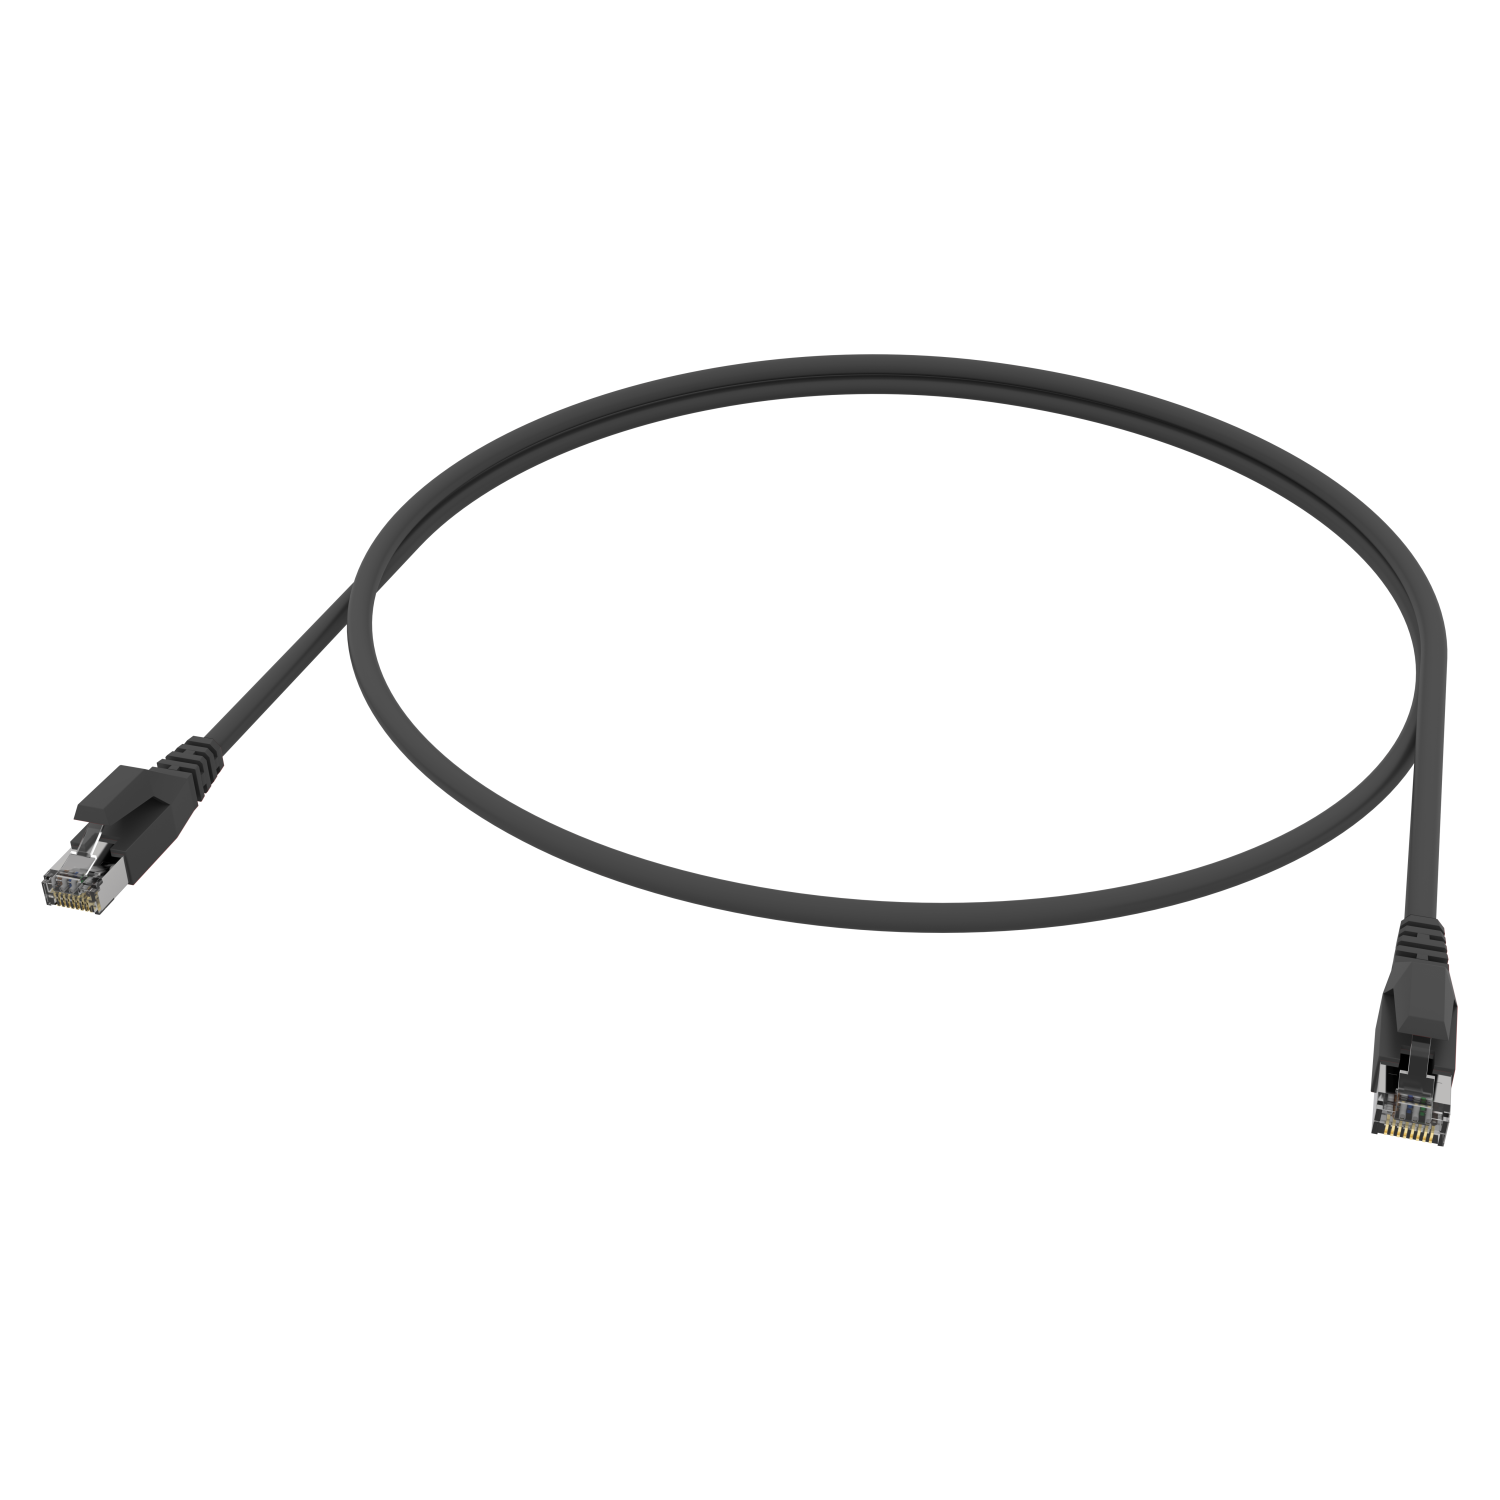 Gigabit, 12,0m Ethernetkabel m schleppkettenfähiges Netzwerkkabel, AIXONTEC Lankabel RJ45 Cat.6A 10 Patchkabel 12,0